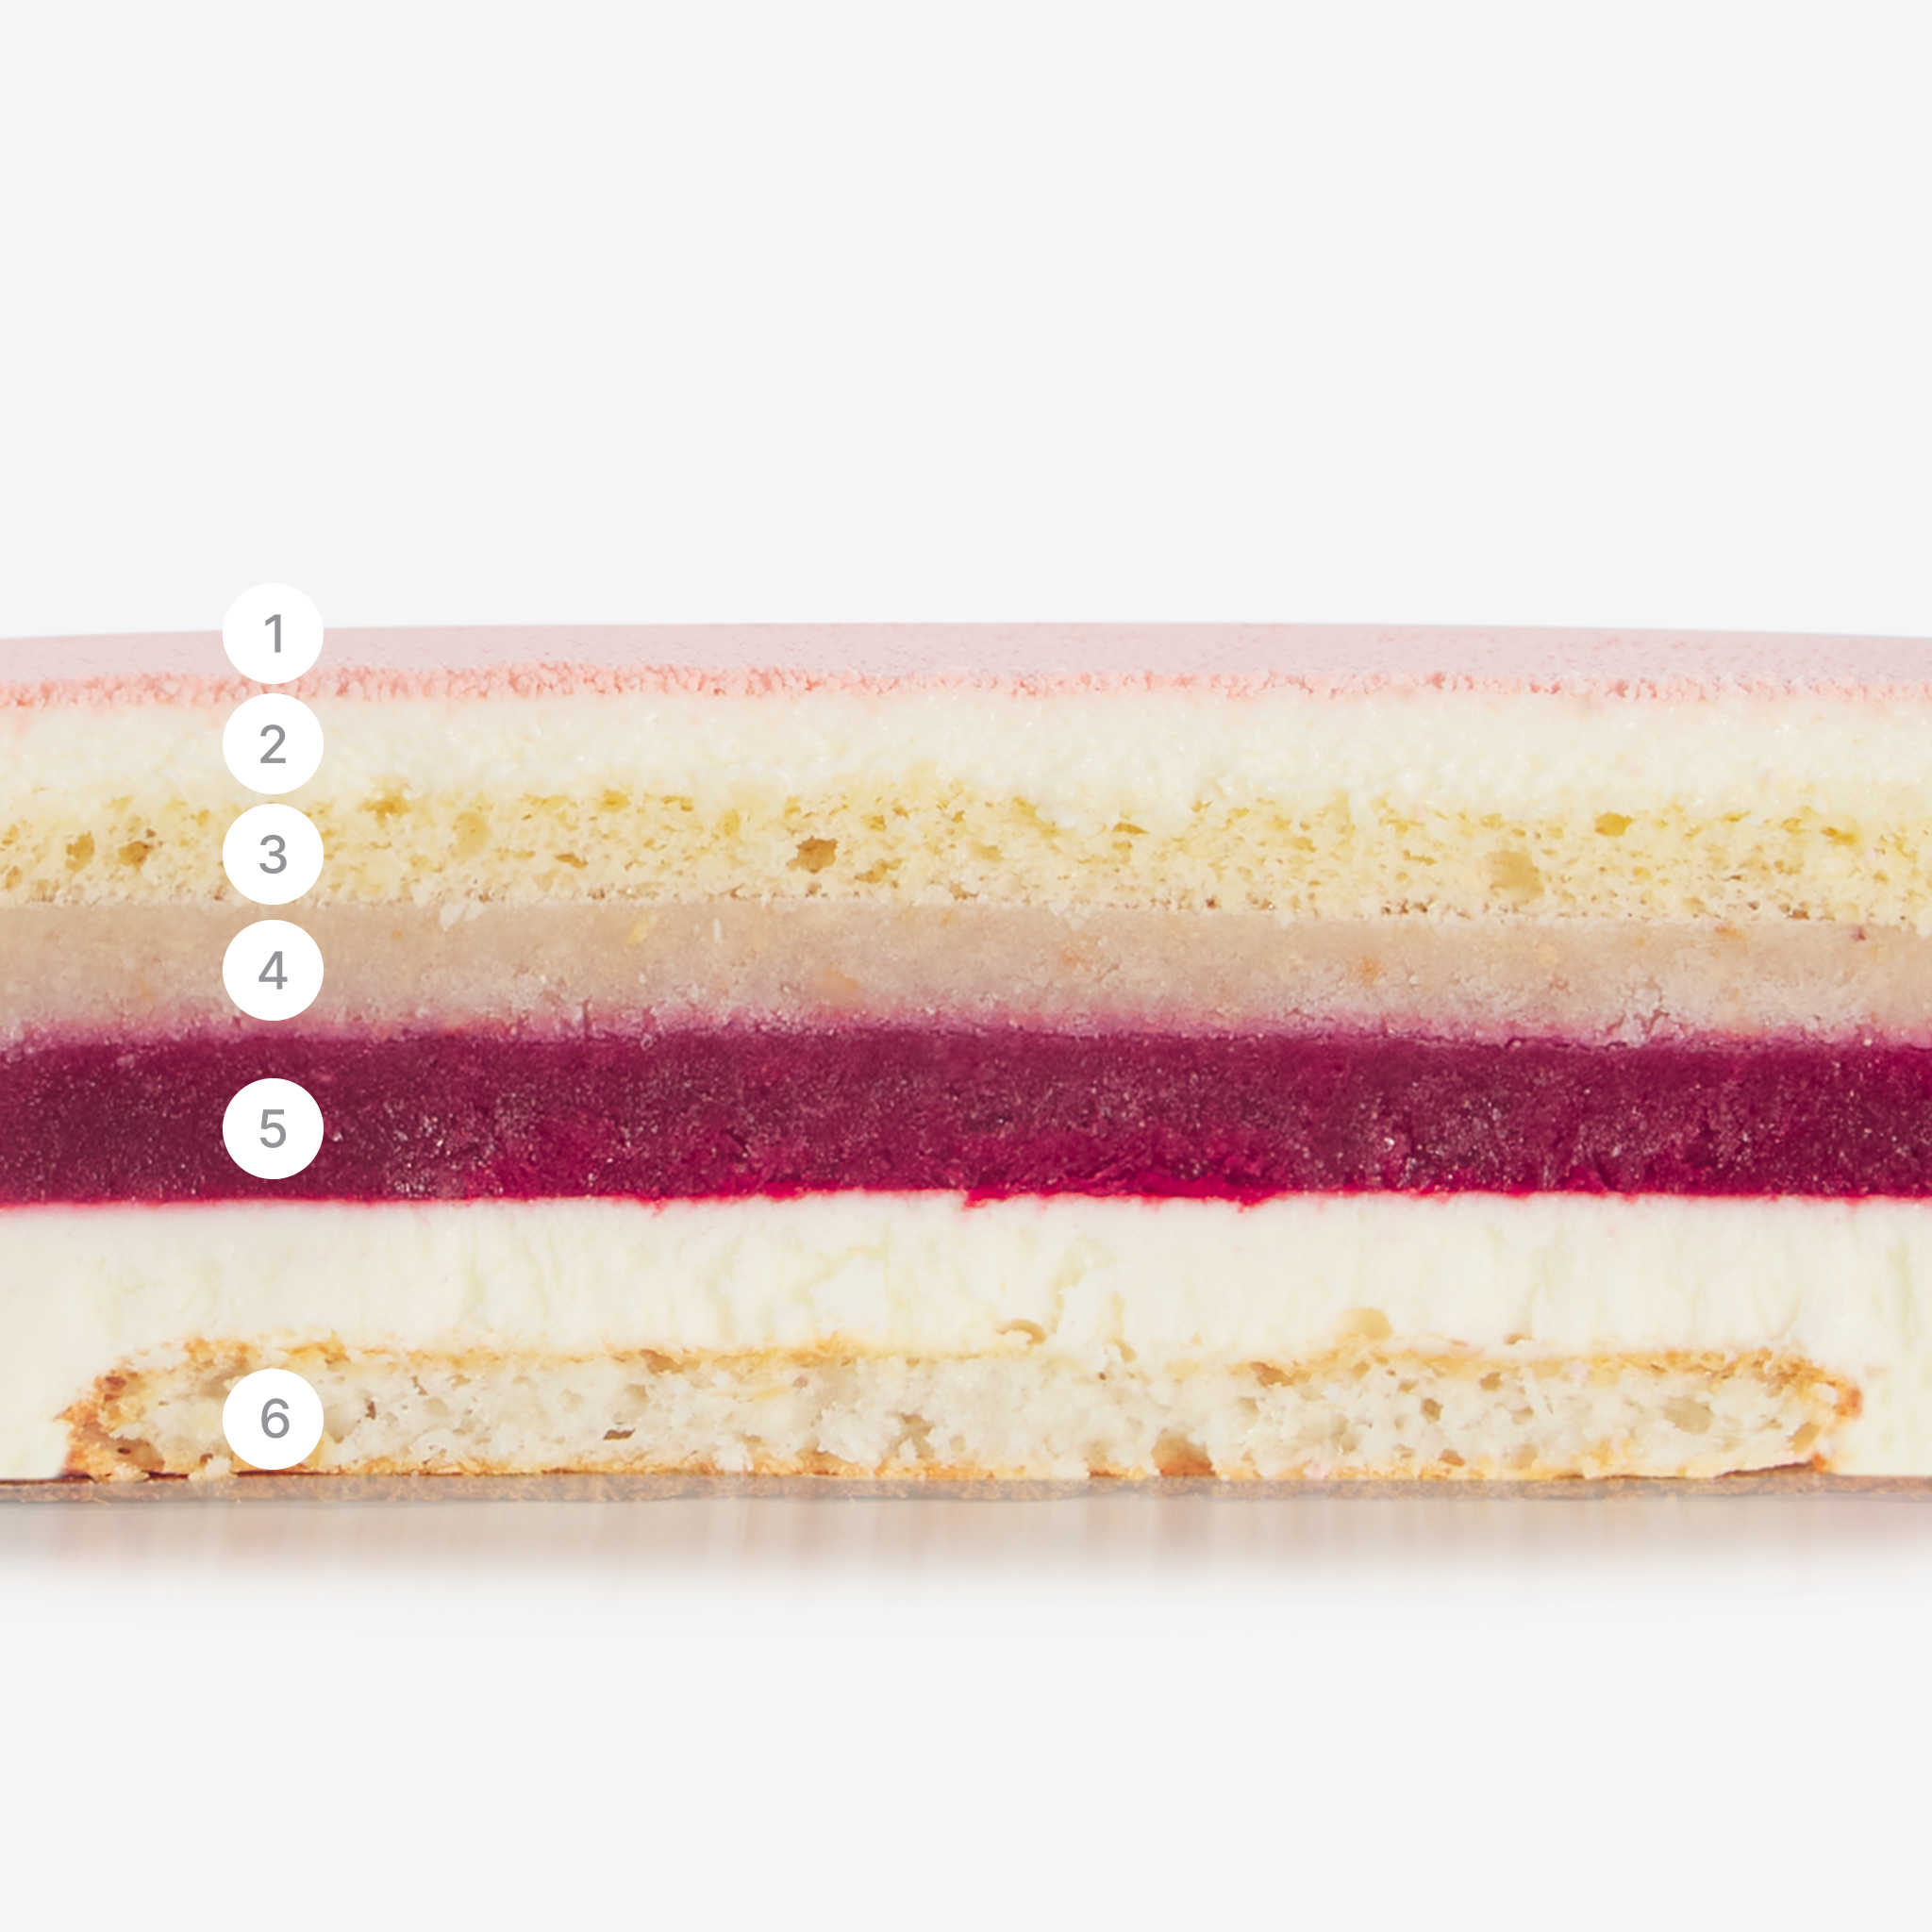 LaFuong Pastry – Be in Blossom – Vải, Phúc bồn tử & Dừa. Mang đến một sự cân bằng tuyệt vời giữa vị chua nhẹ, ngọt thanh và thơm ngậy trong cùng một miếng bánh bằng cách sử dụng vải, dừa và phúc bồn tử. Có thể nói đây chính là sự kết hợp rất thú vị giữa Á & Âu. Không chỉ đặc biệt trong hương vị, lớp bạt bánh của Be in Blossom cũng có hai kết cấu khác nhau: cảm giác mềm xốp đến từ lớp Sponge dừa và một chút độ giòn của sợi dừa tươi nằm trong lớp bạt Dacquoise. . Đây không chỉ là một món quà tuyệt vời, mà còn là lựa chọn xứng đáng cho mọi bữa tiệc sinh nhật, gặp gỡ bạn bè hay các dịp họp mặt gia đình.